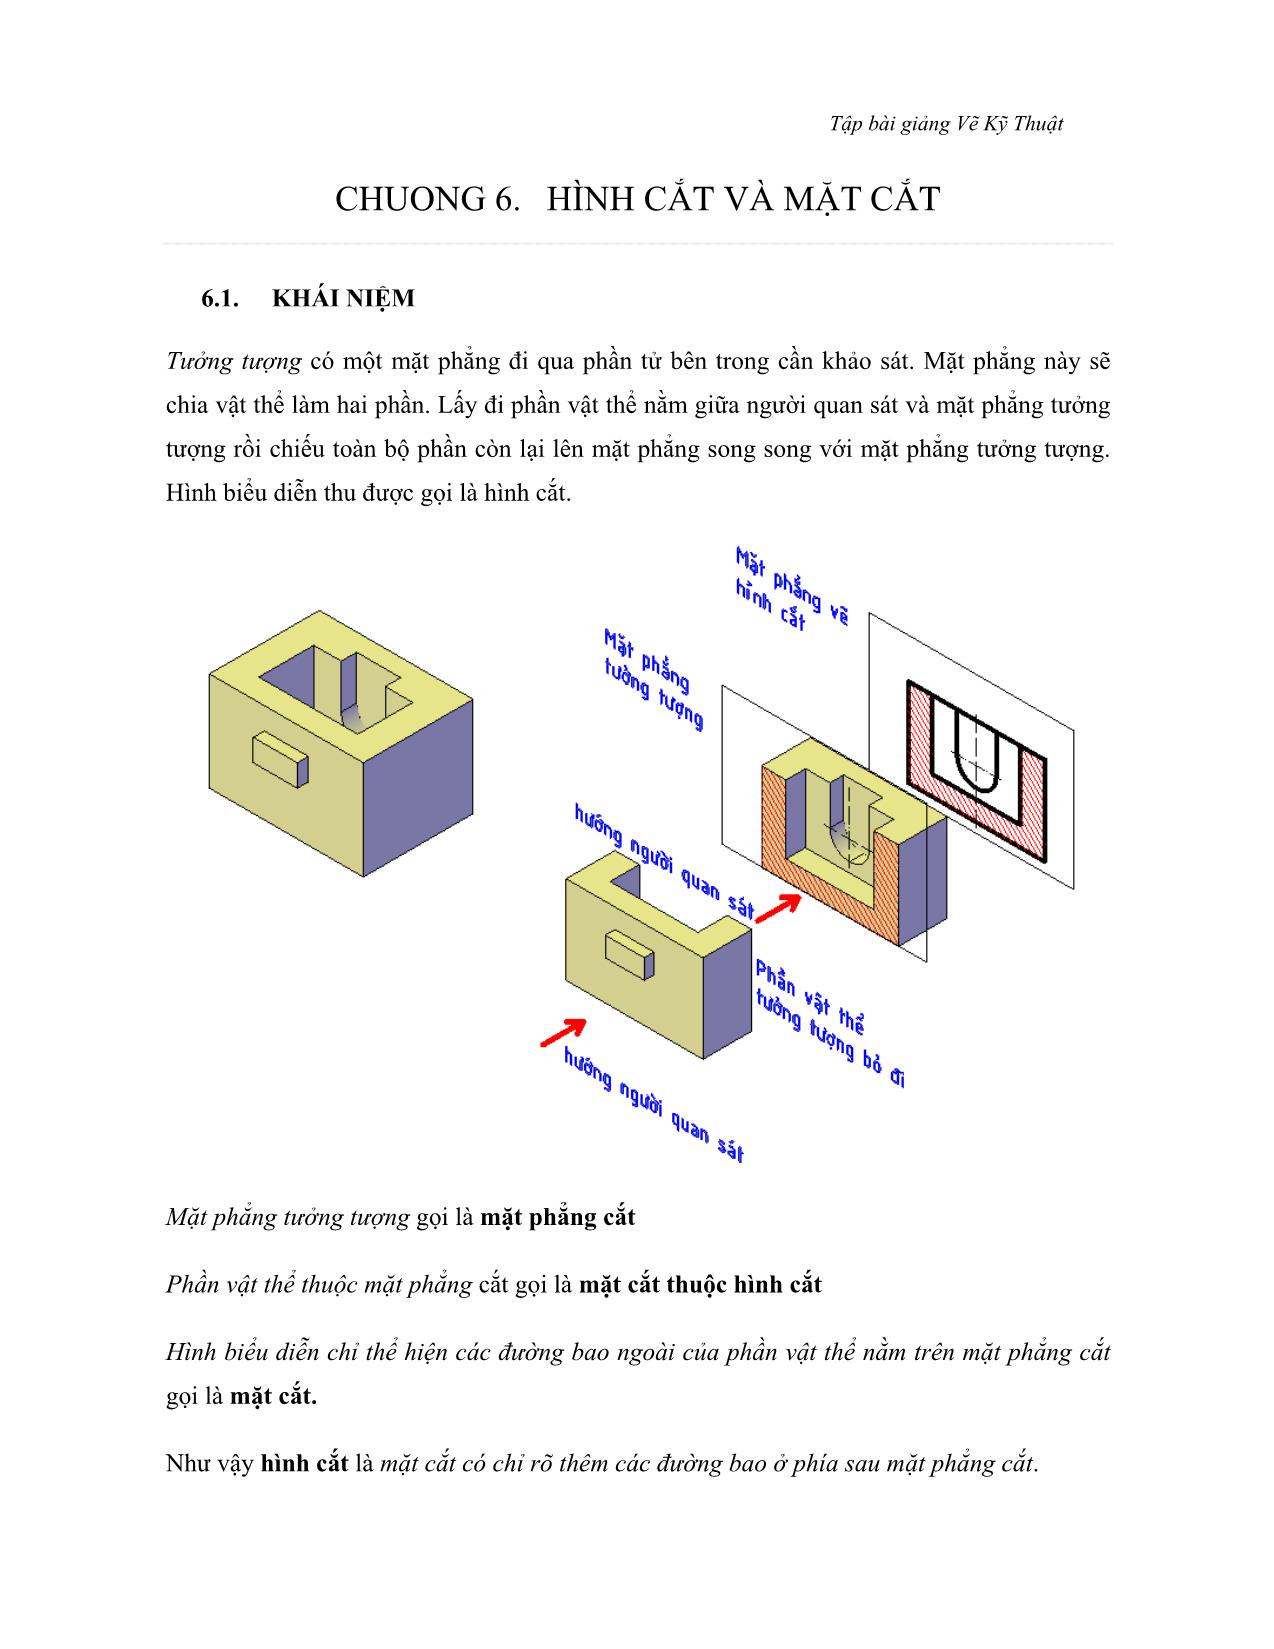 Bài giảng Vẽ kỹ thuật - Chương 6: Hình cắt và mặt cắt trang 1